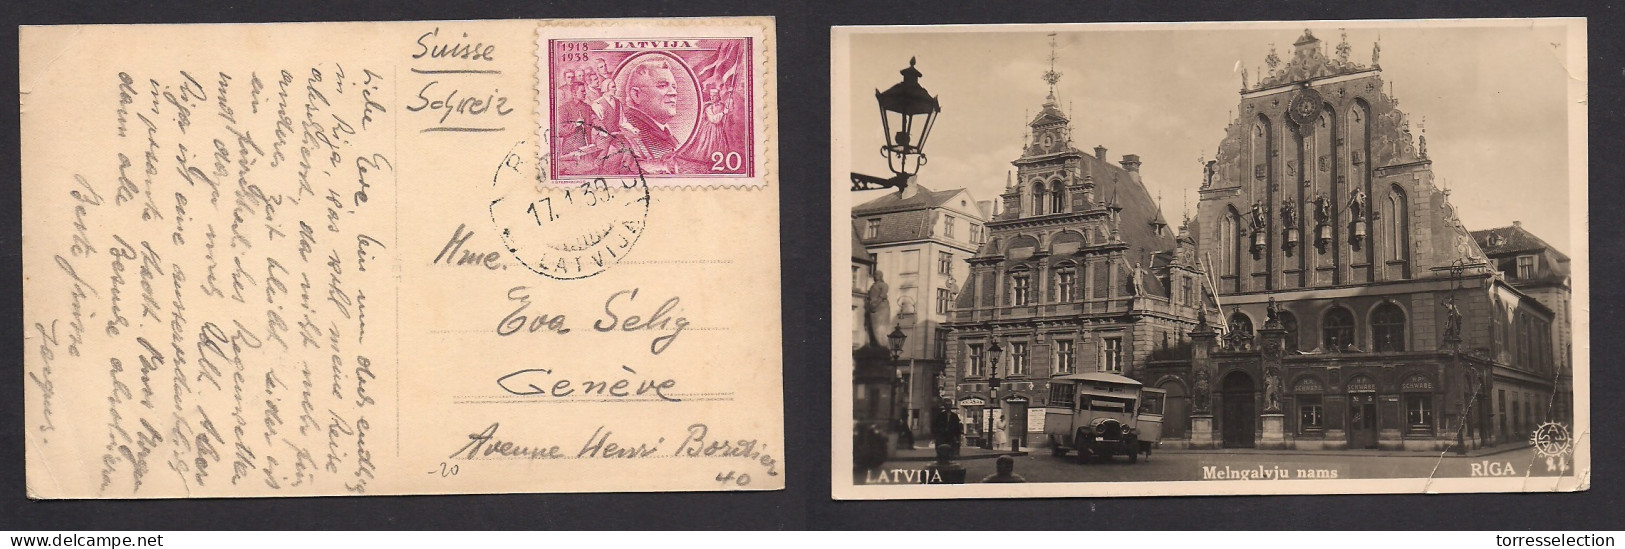 LATVIA. 1939 (17 Jan) Riga - Geneve, Switzerland. Single 20c Violet Fkd Ppc. Fine Used. - Lettland